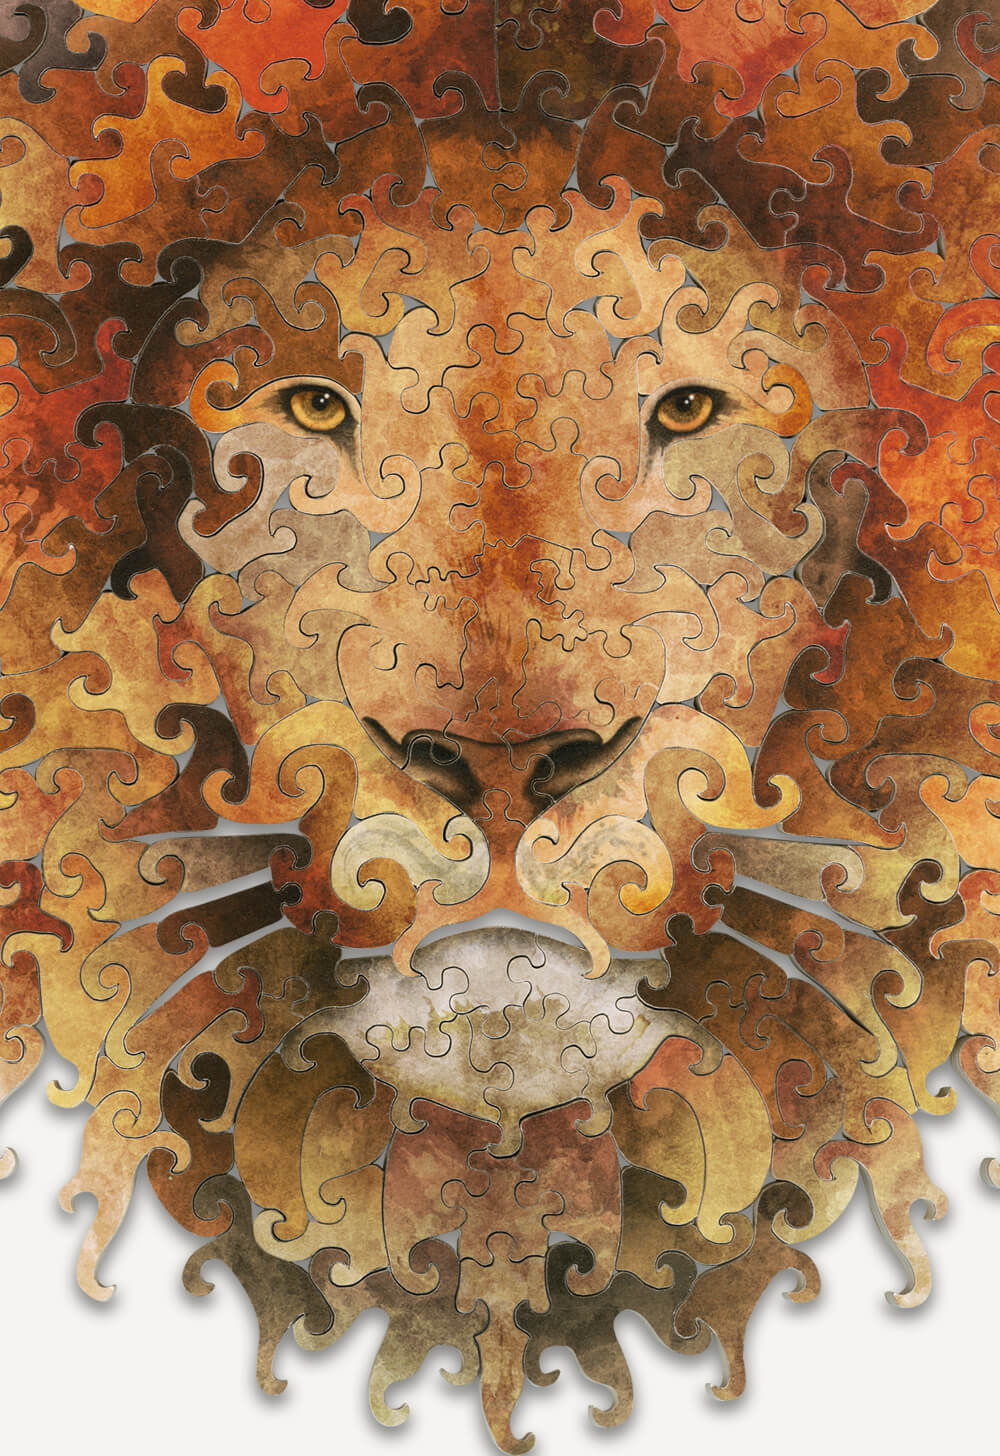 Wooden Jigsaw Puzzle Lion – Magic Puzzzles